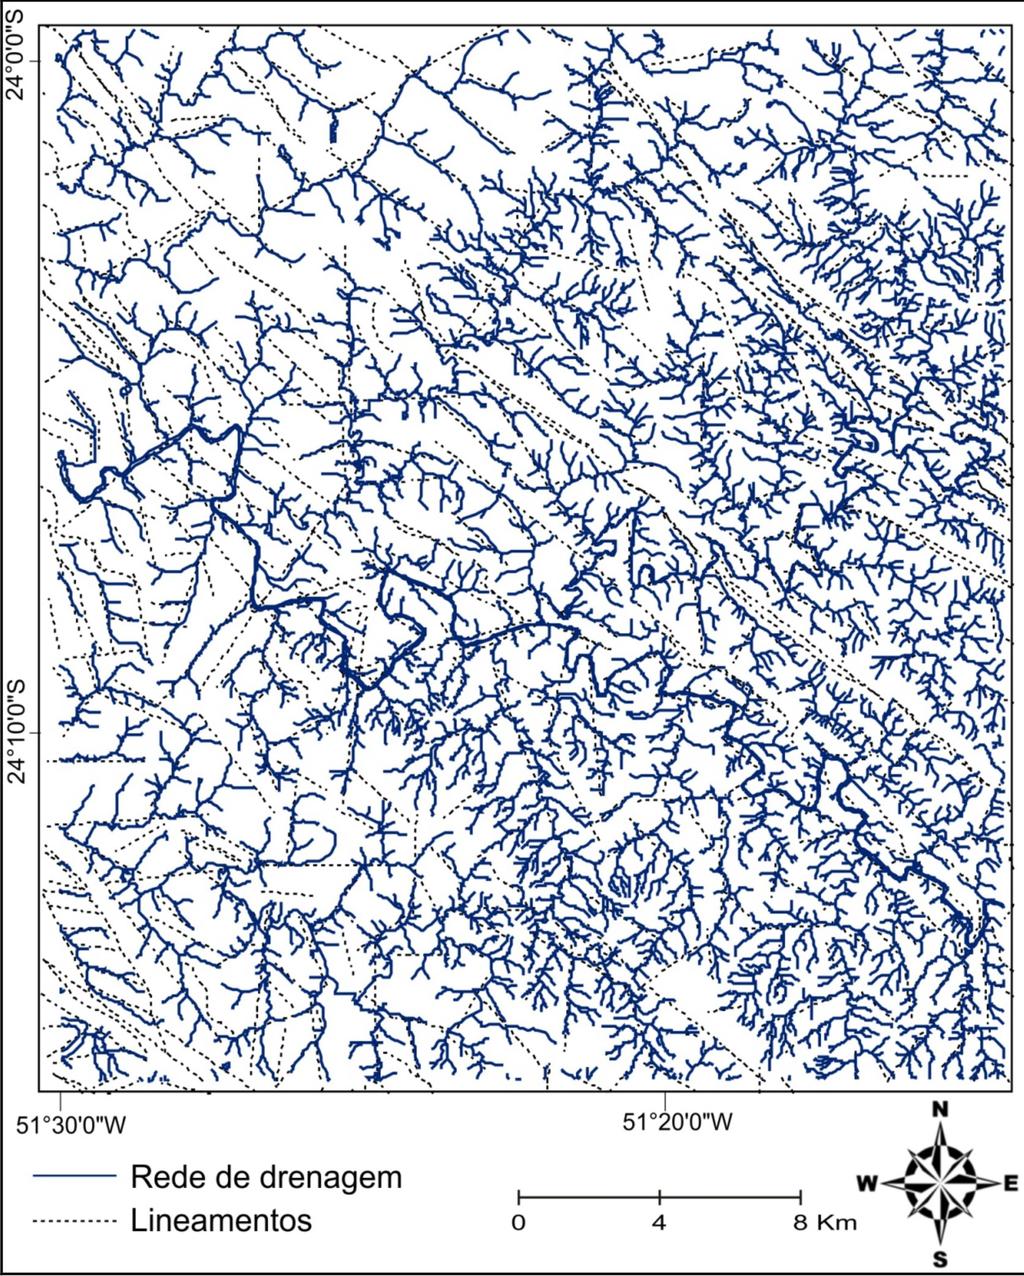 RESULTADOS A rede de drenagem da carta de Faxinal apresentase fortemente controlada por lineamentos estruturais (Figura 3).